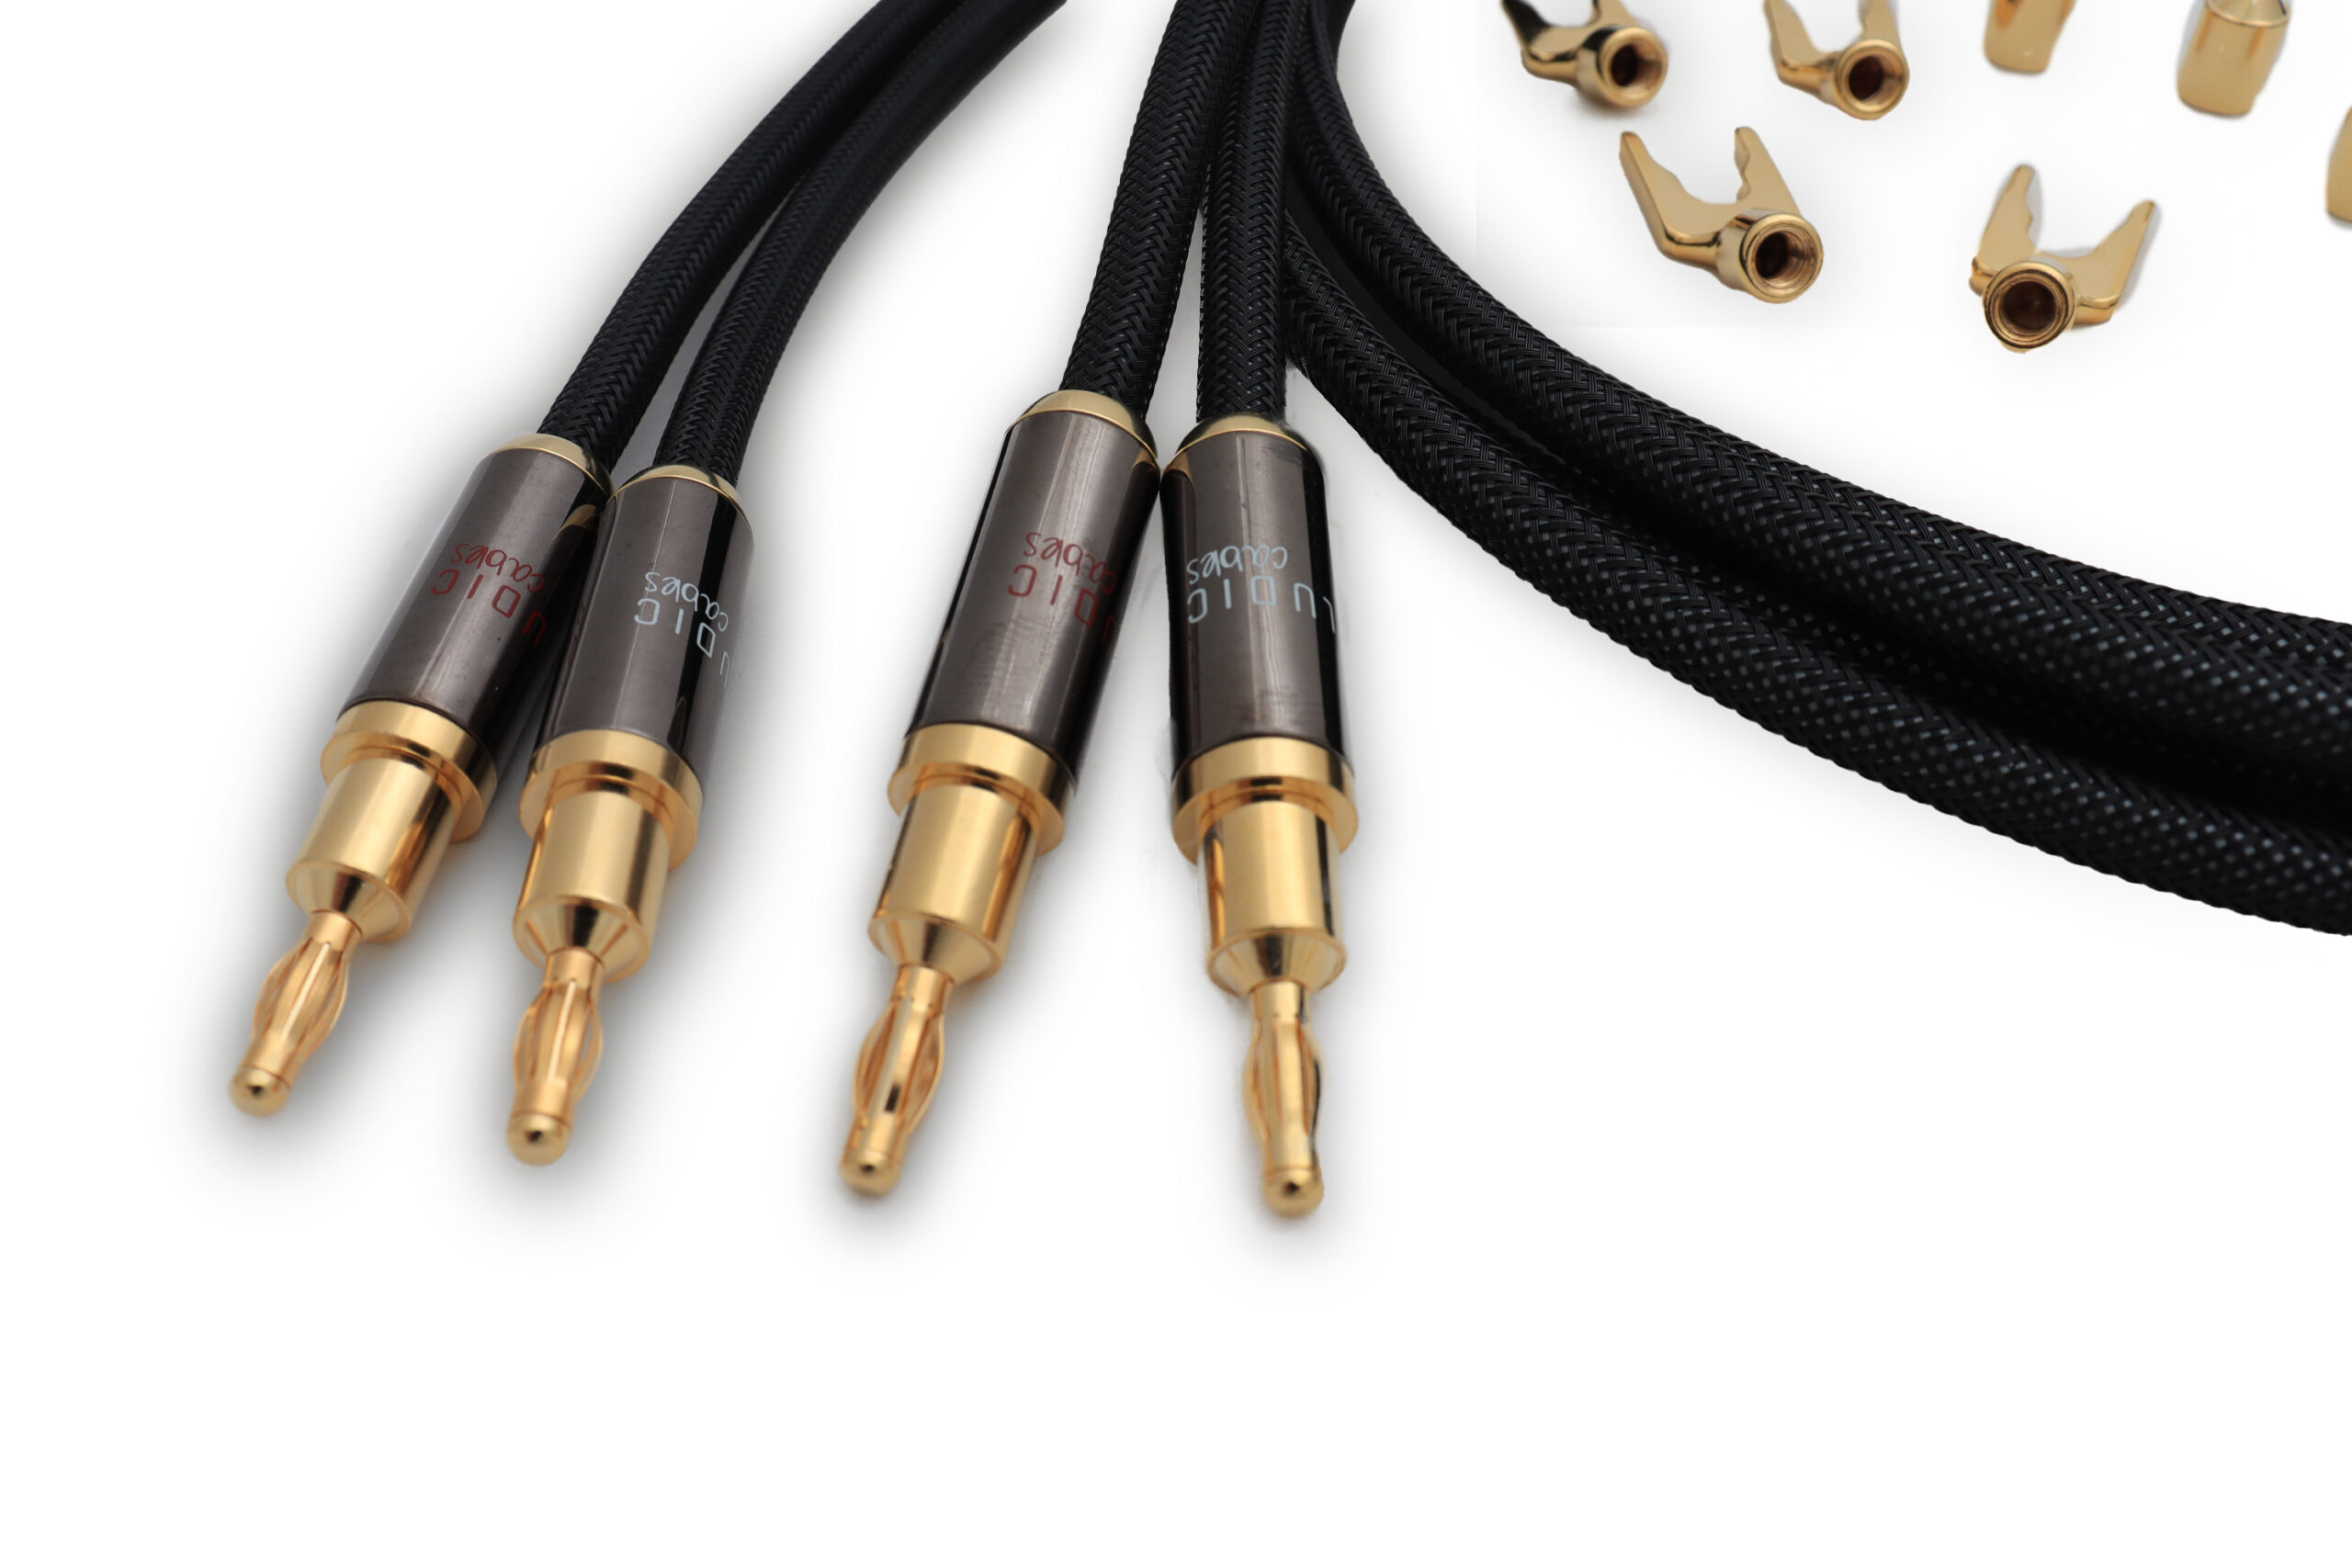 Hera loudspeakercable set (2pcs) - Ludic Audio manufacturer in Europe for  Audio accessoires